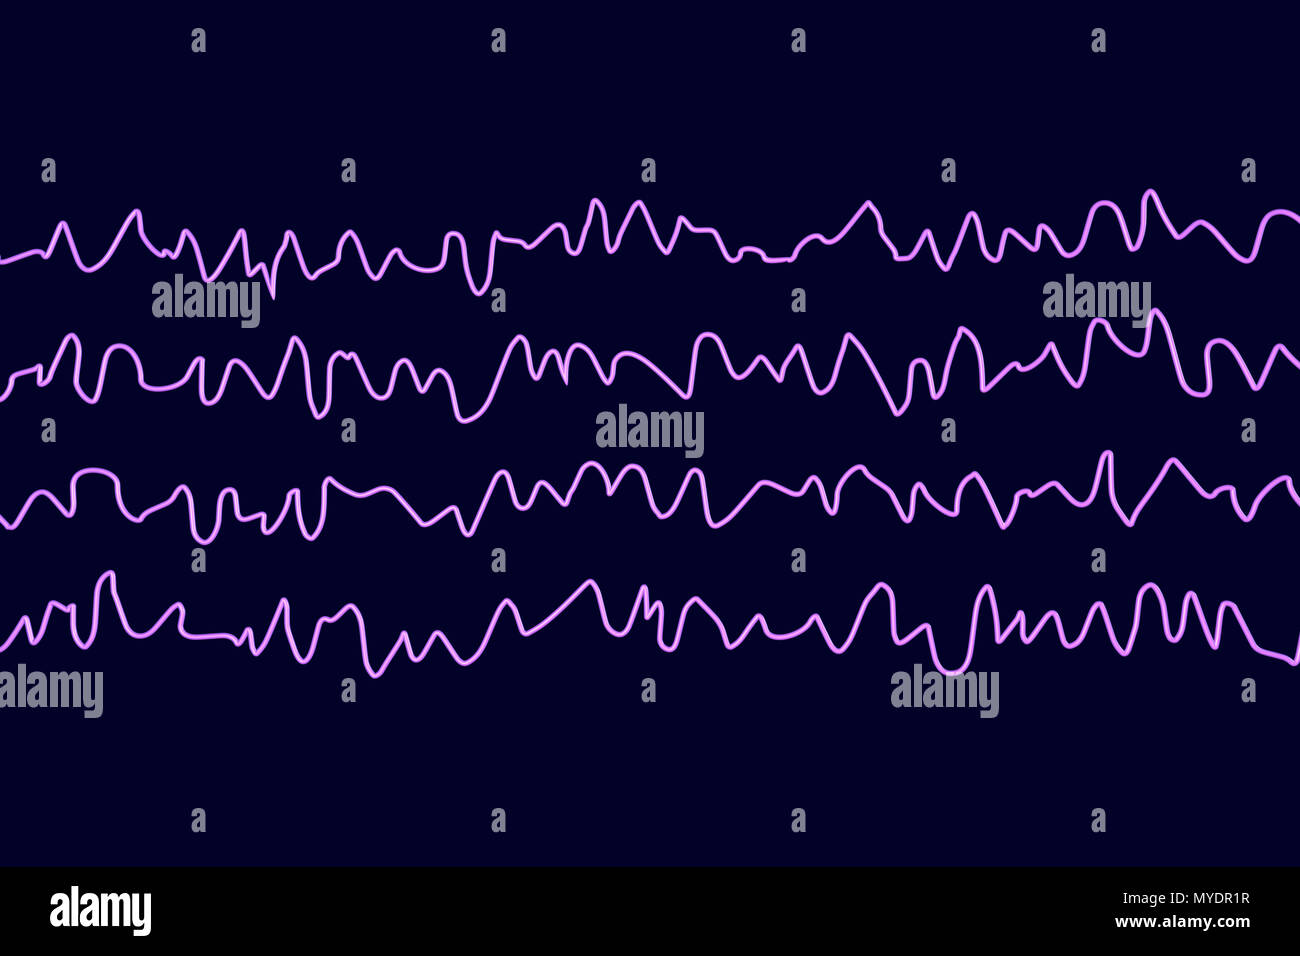 Le onde cerebrali in stato sveglio durante il riposo, illustrazione del computer. Un'elettroencefalogramma (EEG) misura l'attività elettrica del cervello utilizzando elettrodi collegati al cuoio capelluto. Vari disturbi possono essere diagnosticati analizzando i risultati EEG. Foto Stock